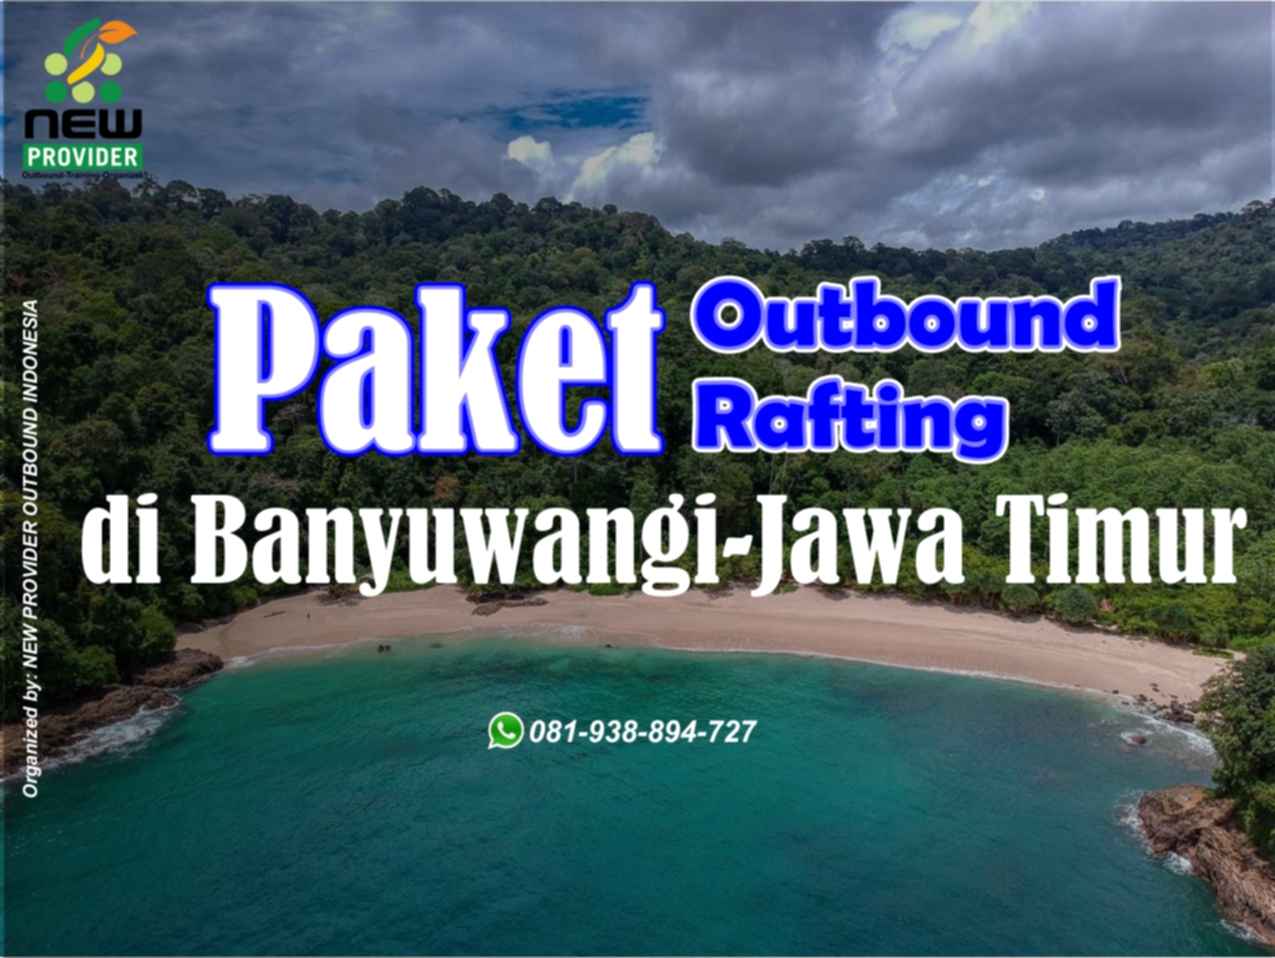 Paket Outbound Banyuwangi